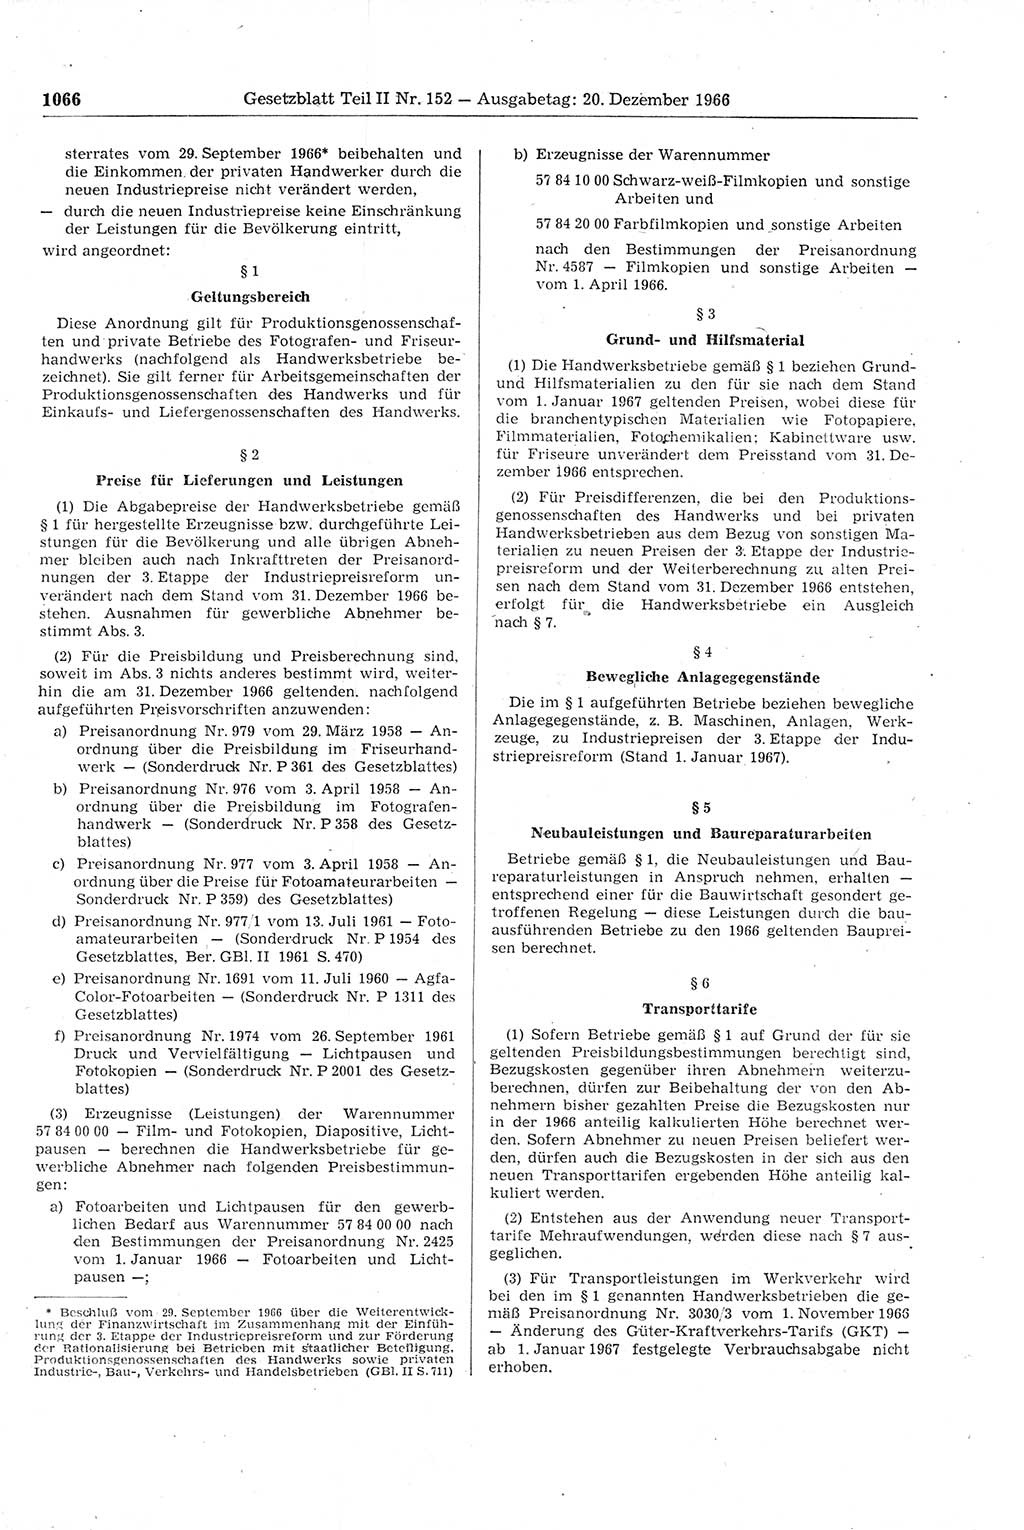 Gesetzblatt (GBl.) der Deutschen Demokratischen Republik (DDR) Teil ⅠⅠ 1966, Seite 1066 (GBl. DDR ⅠⅠ 1966, S. 1066)